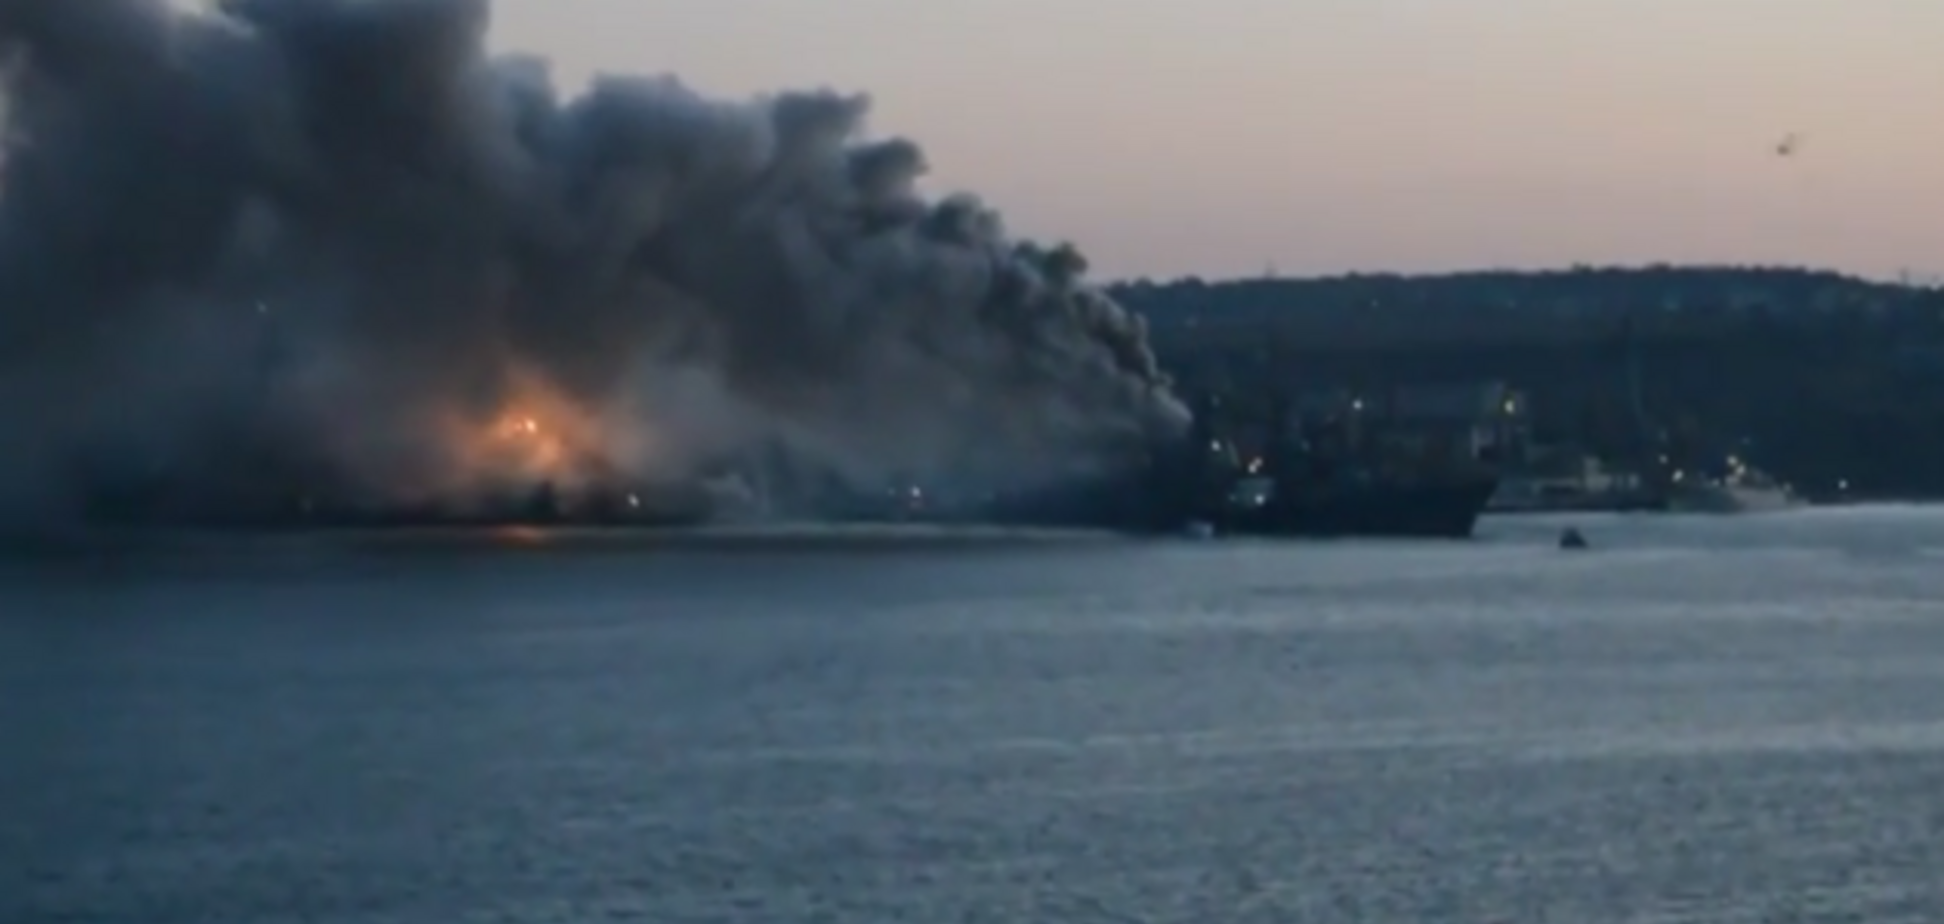 З'явилося відео великої пожежі на російському військовому кораблі 'Керч' в окупованому Севастополі